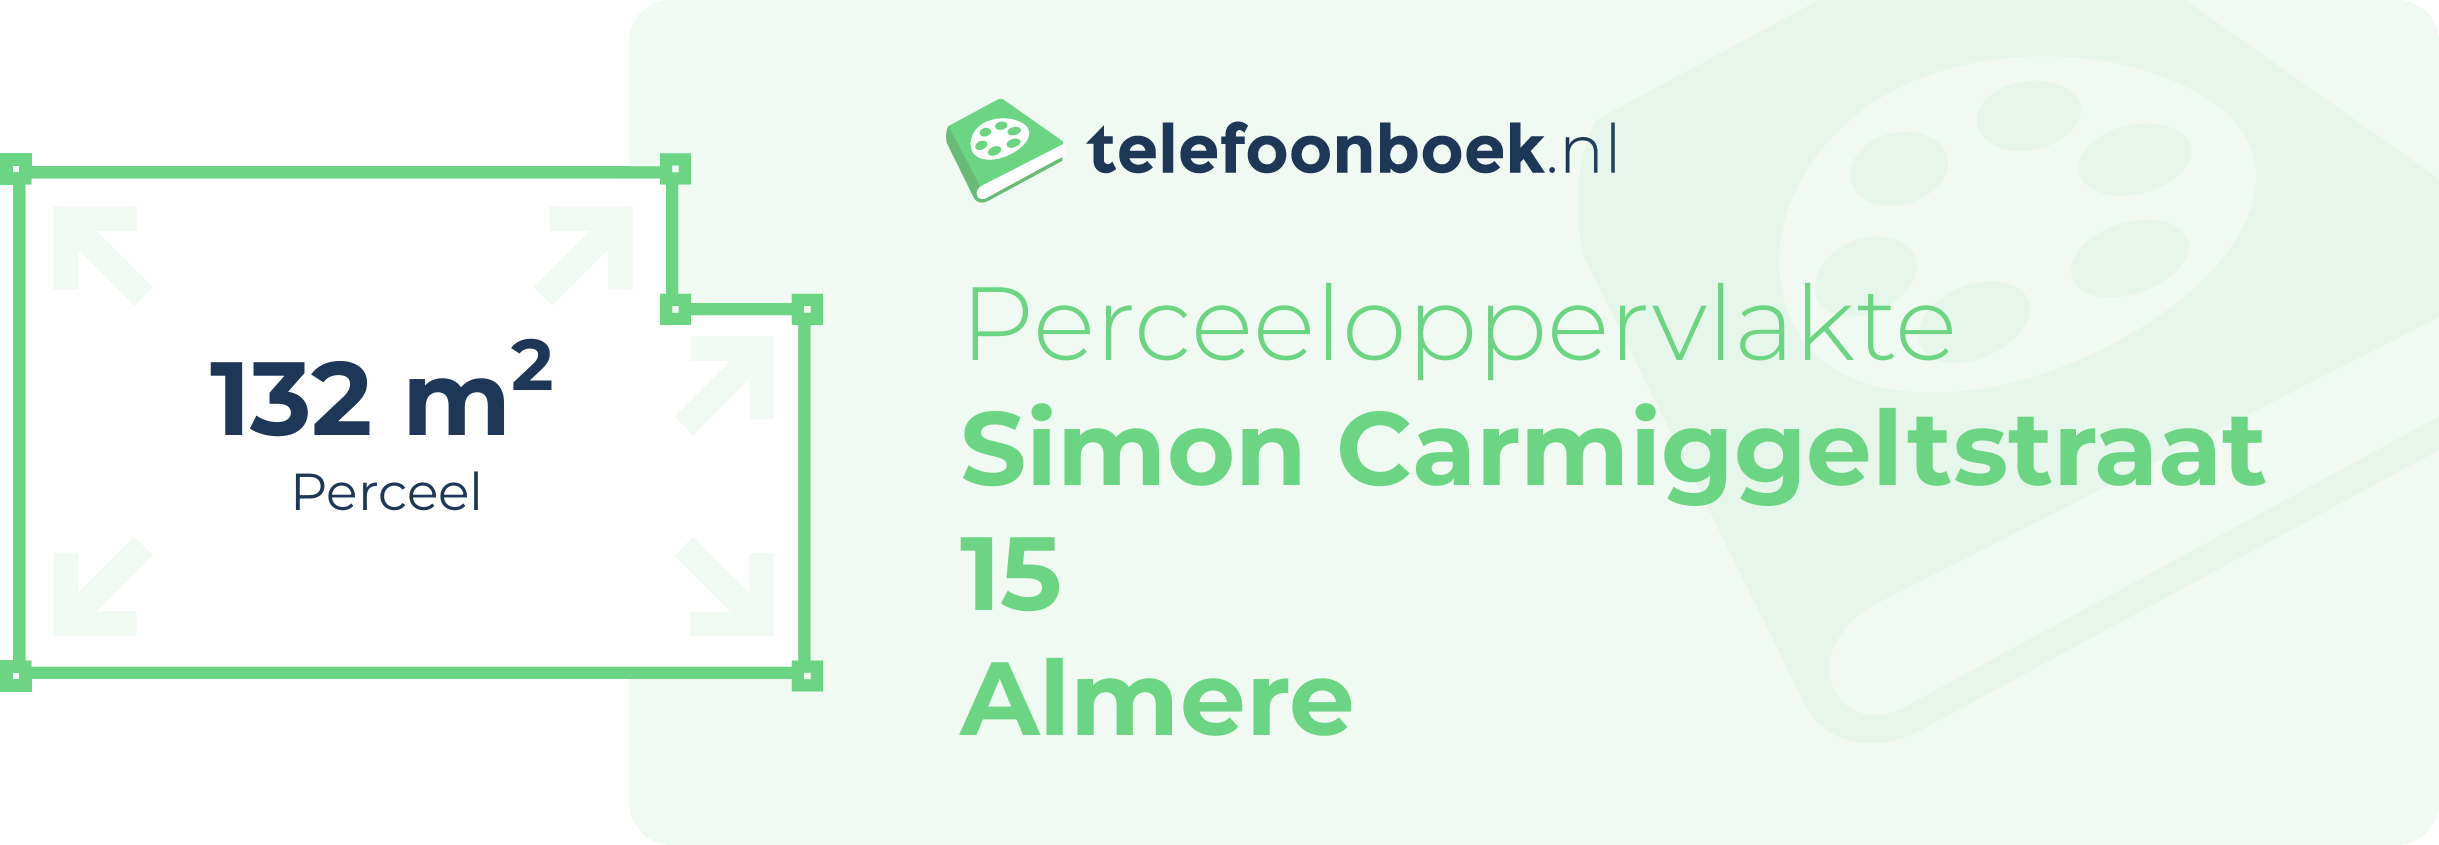 Perceeloppervlakte Simon Carmiggeltstraat 15 Almere